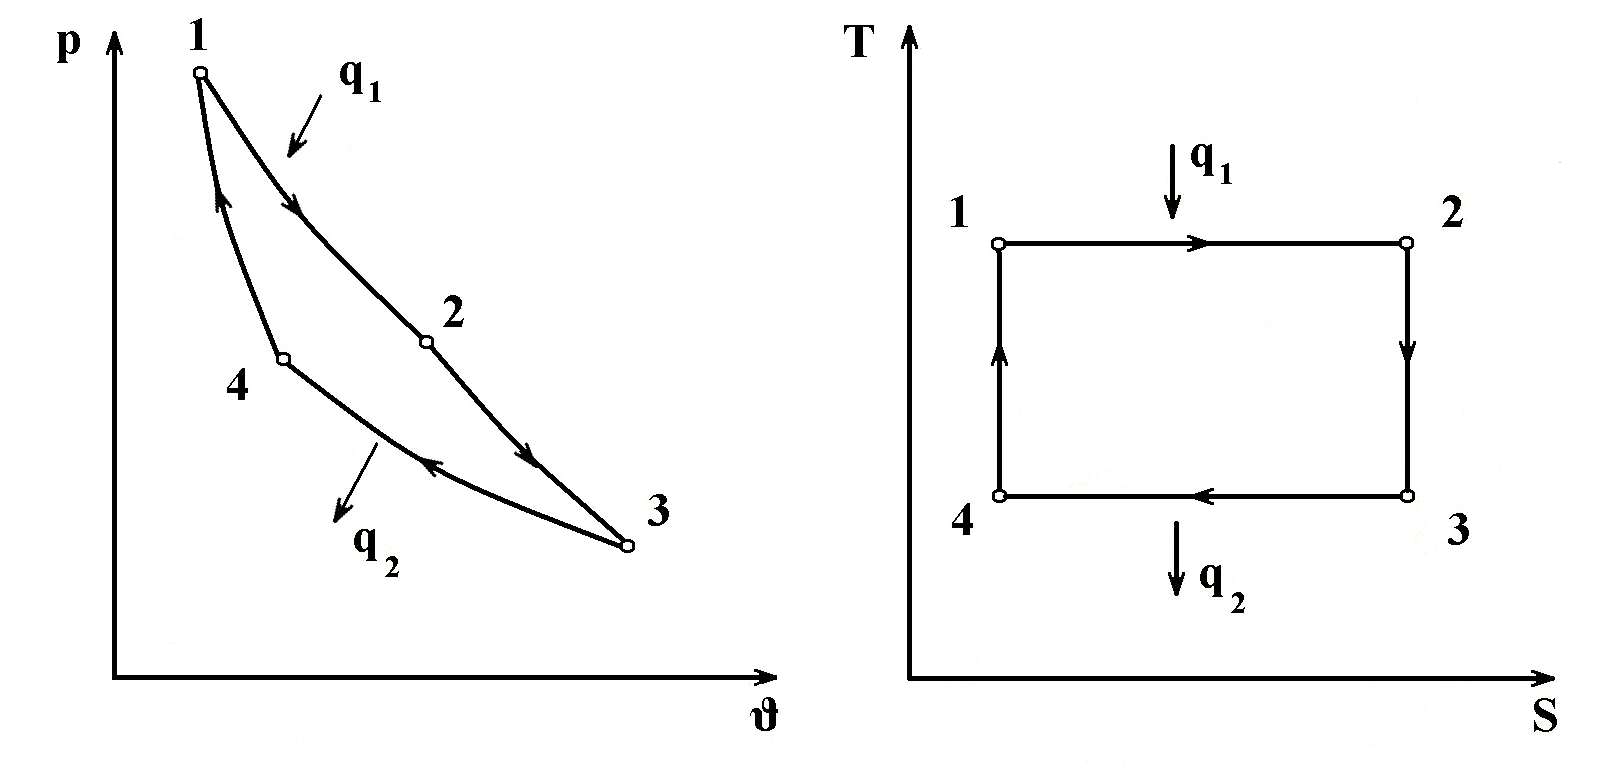 Изобразить на рабочей и тепловой диаграммах цикл. Цикл Карно график p-v. Диаграмма цикла Карно в координатах (p, v), (t, s). Цикл Карно на TS диаграмме. График цикла Карно в координатах st..